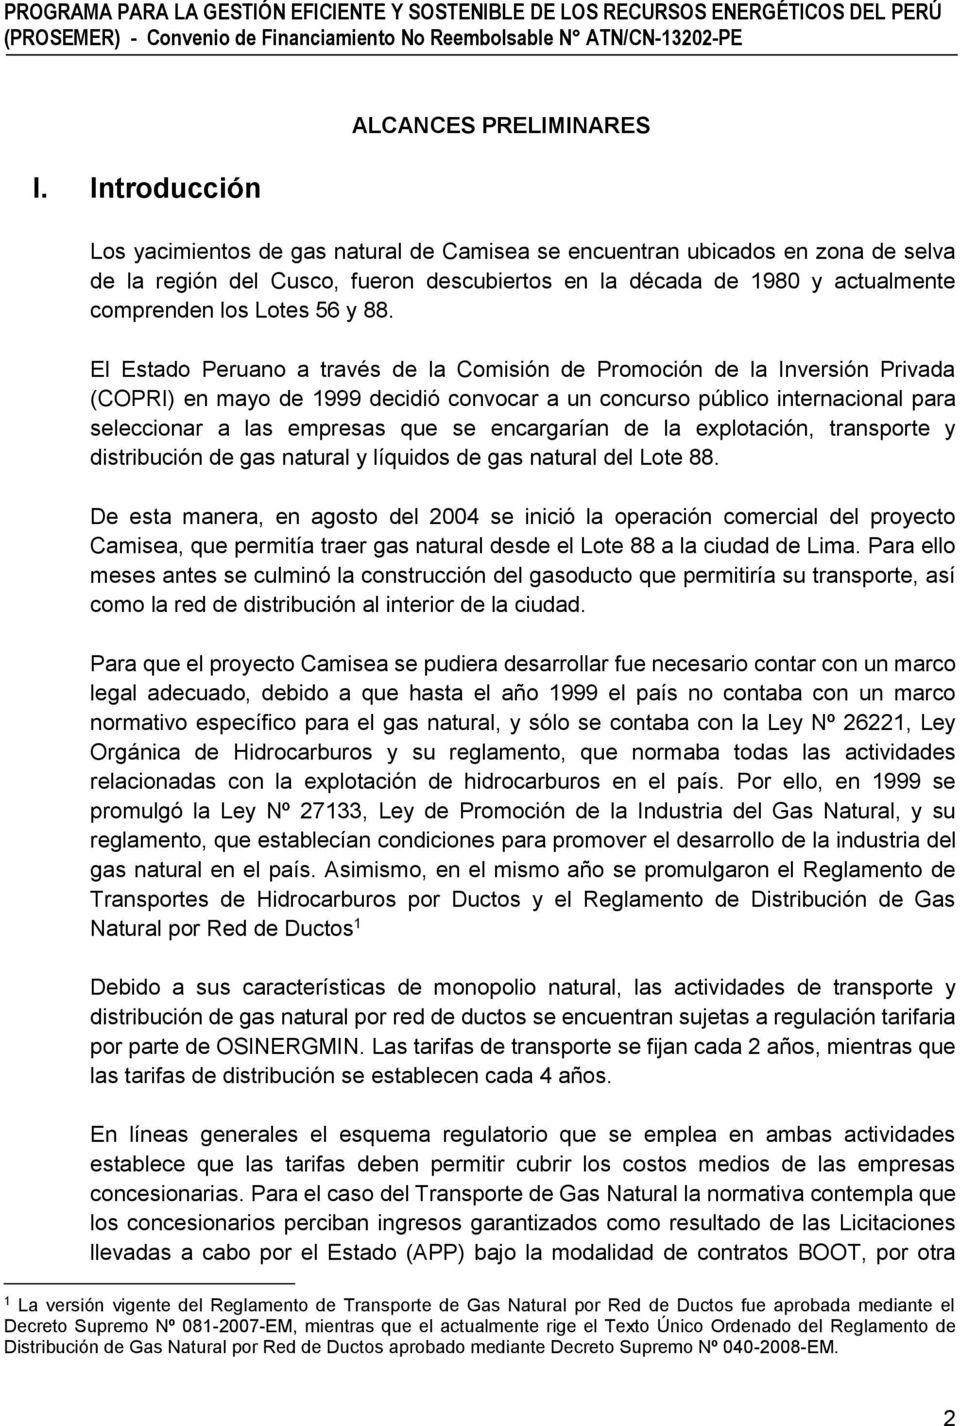 El Estado Peruano a través de la Comisión de Promoción de la Inversión Privada (COPRI) en mayo de 1999 decidió convocar a un concurso público internacional para seleccionar a las empresas que se